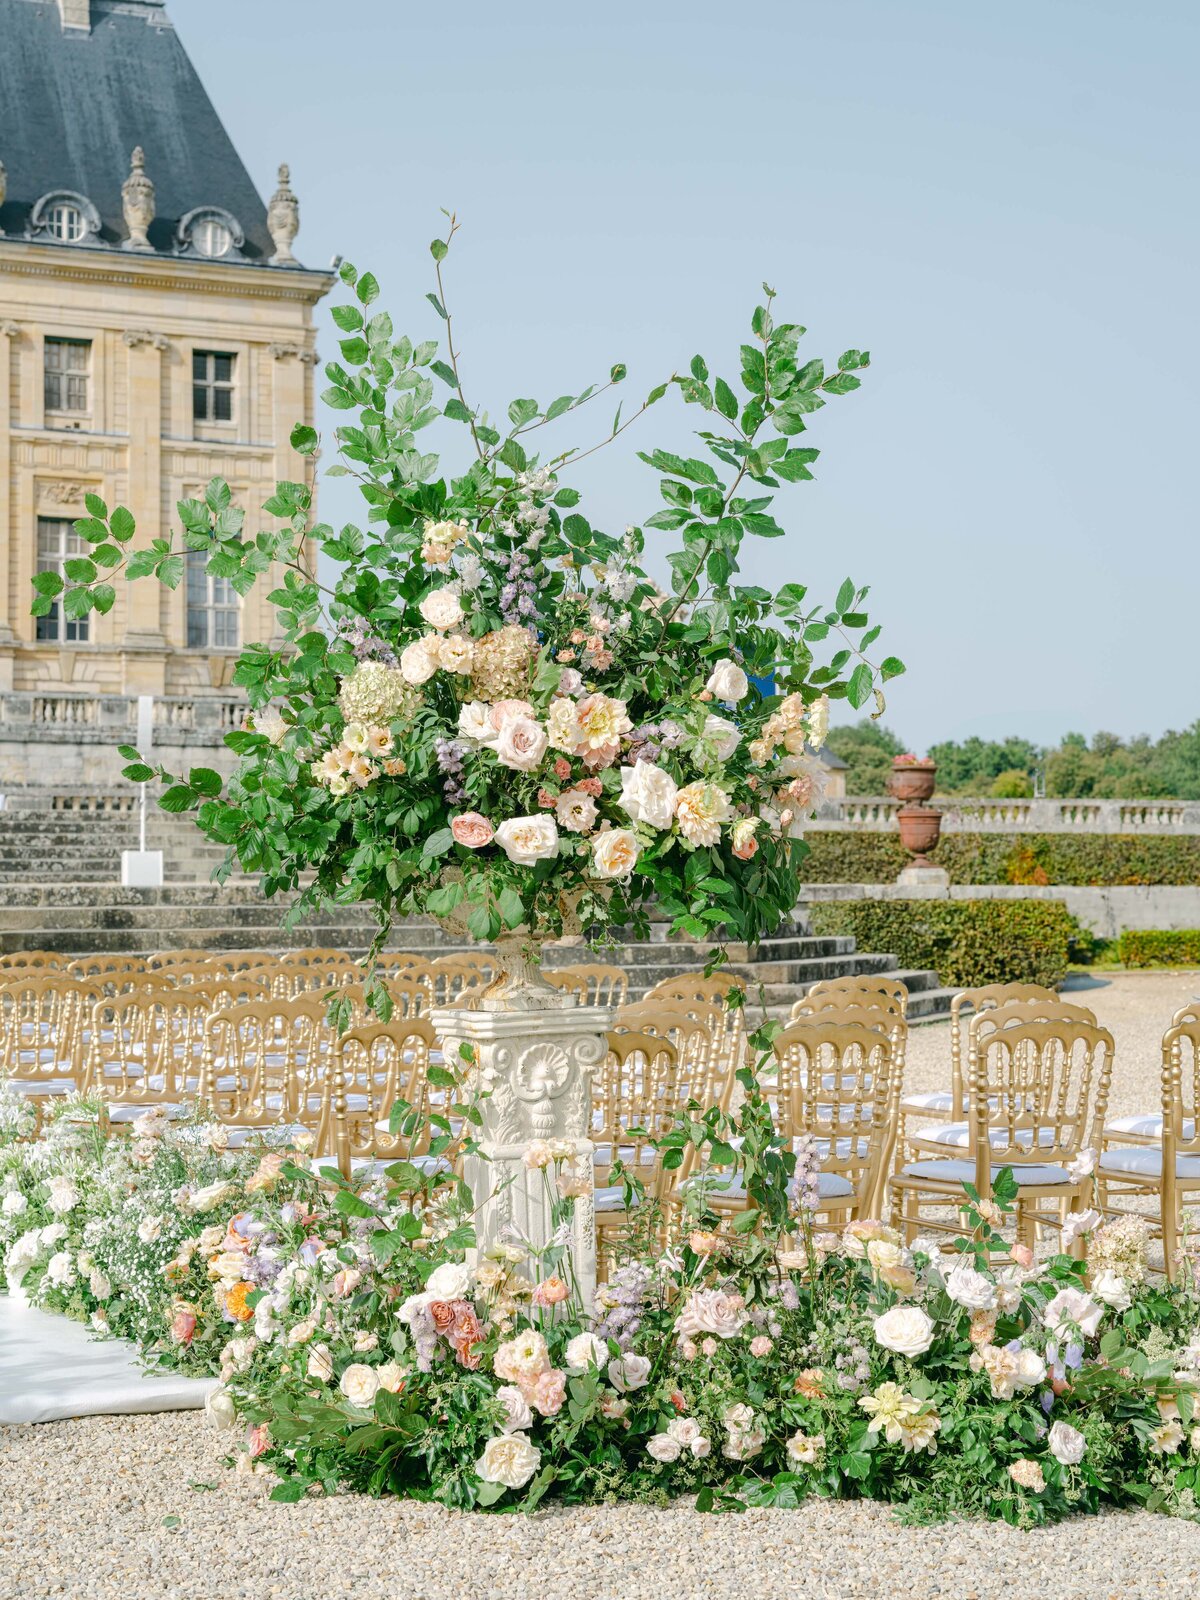 Chateau-Vaux-le-vicomte-wedding-florist-FLORAISON10